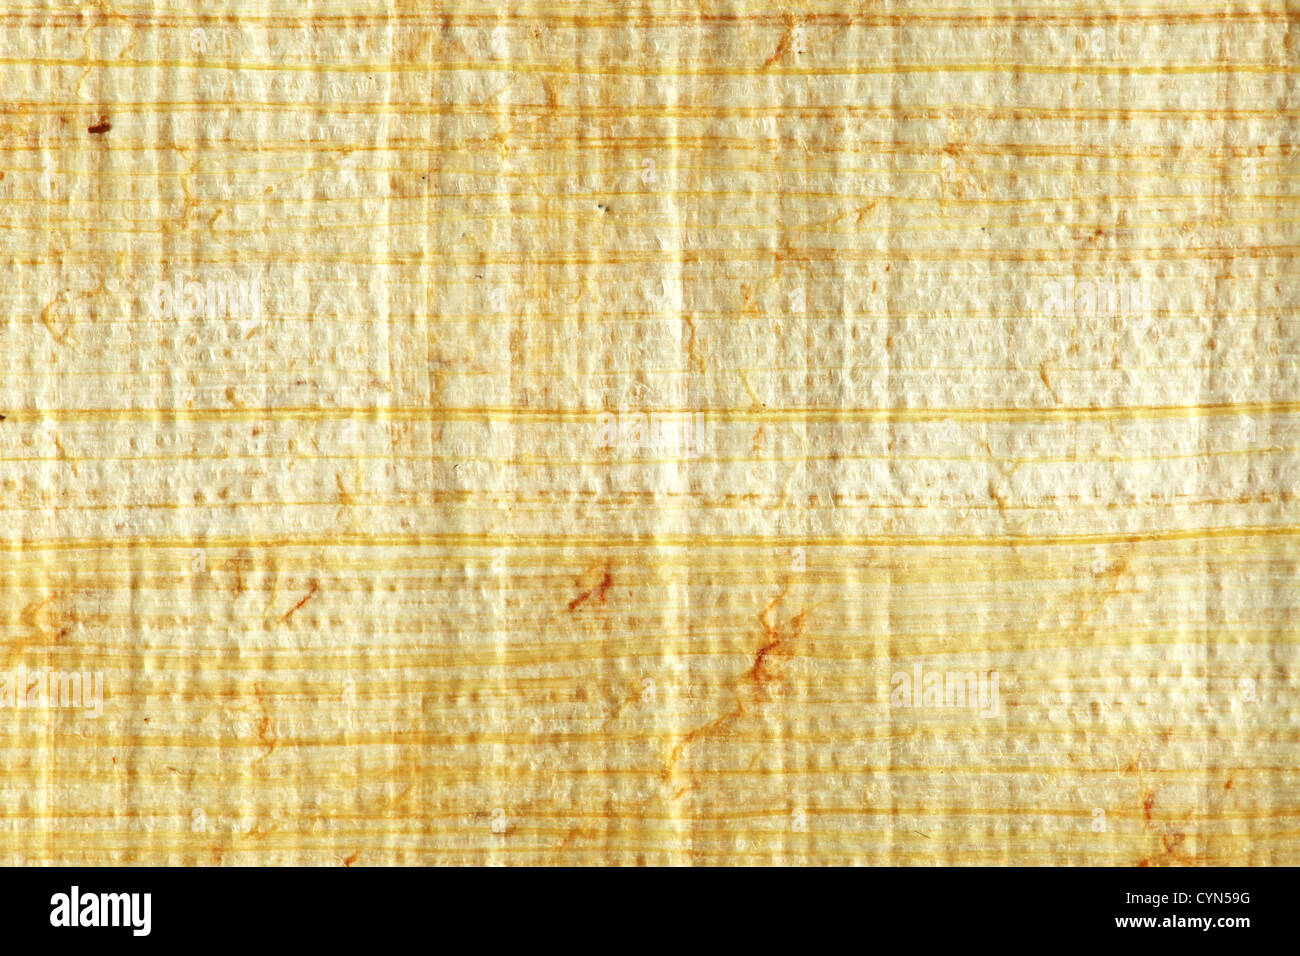 Papyrus closeup Stock Photo